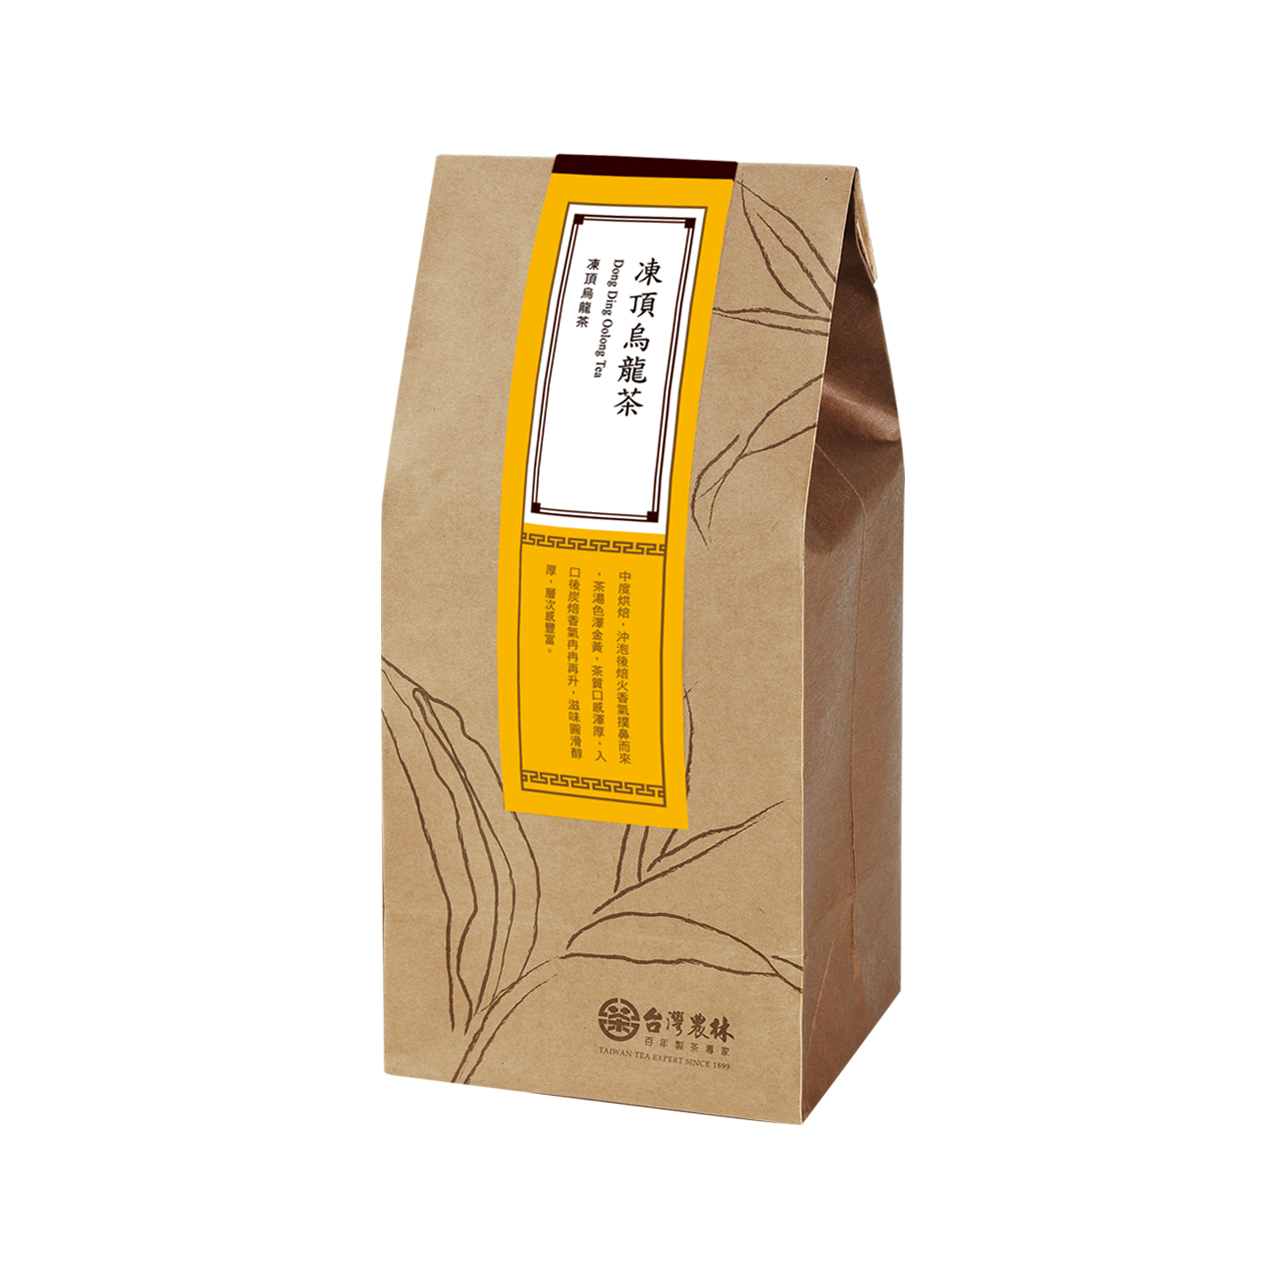 補充包-凍頂烏龍茶(商品保存期限：2025年2月)